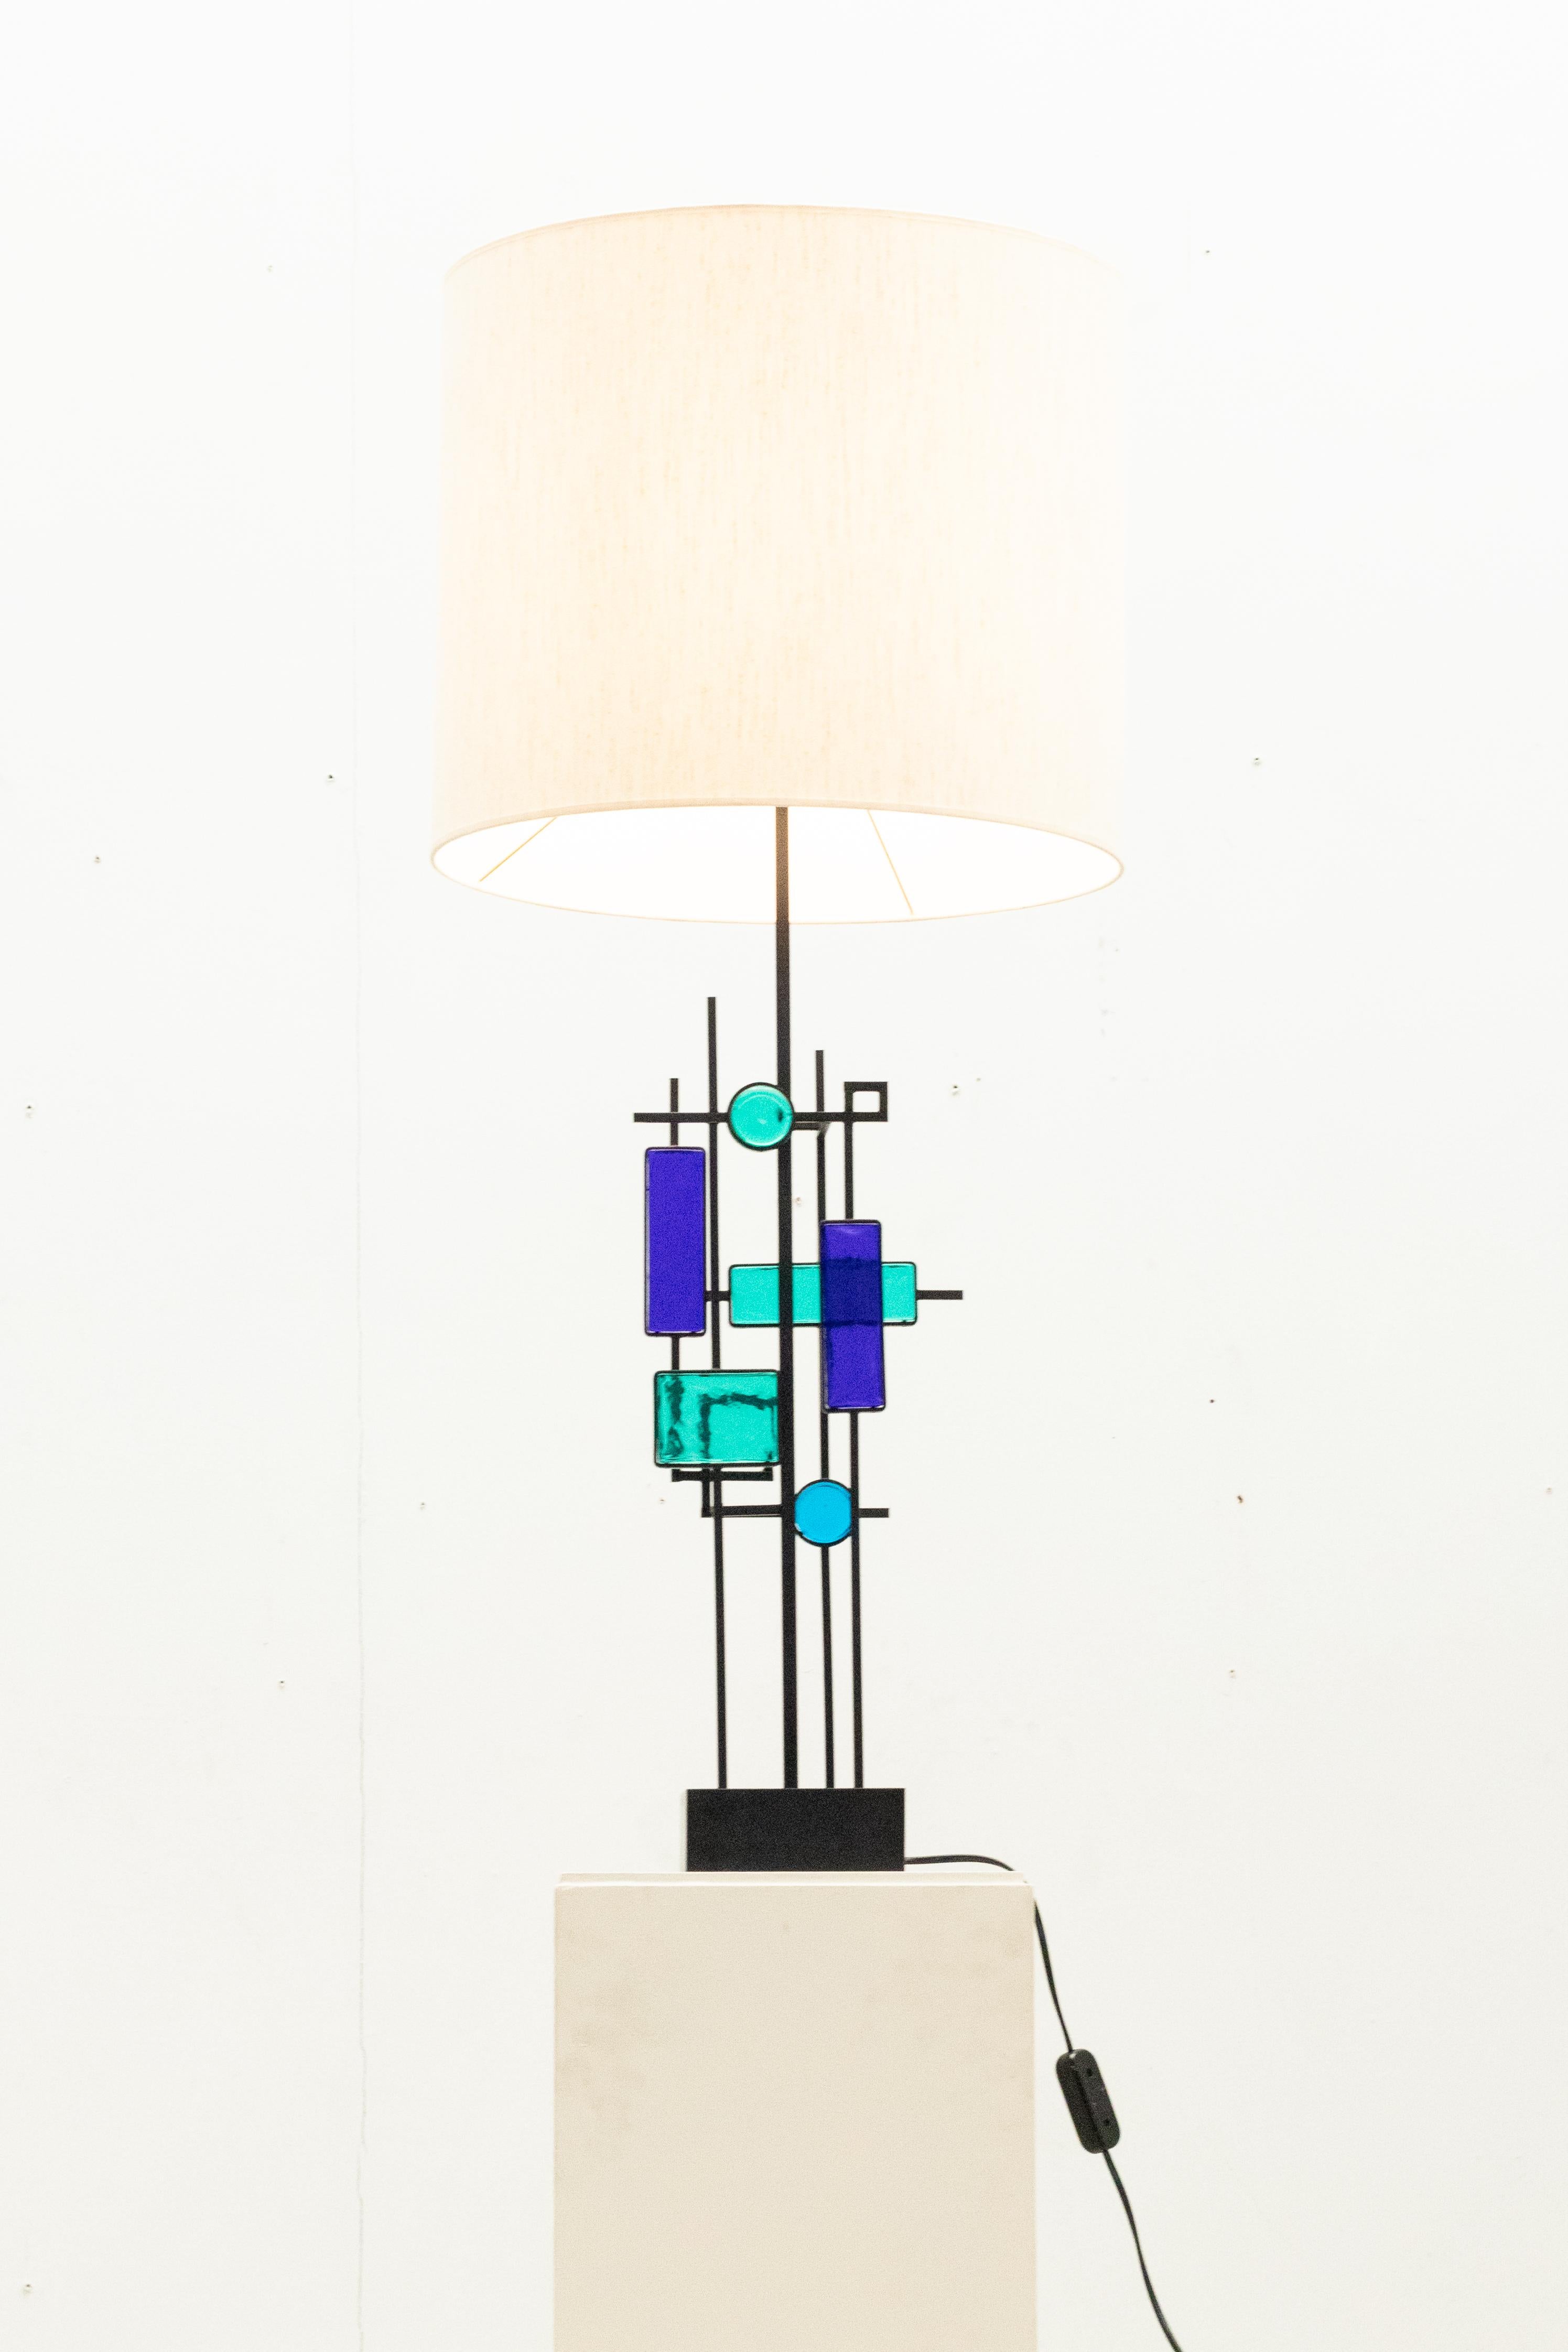 La lampe de table fabriquée en fer et ornée de verre bleu se présente comme un objet de décoration.  création de Svend Aage Holm Sørensen pour Holm Sørensen & Co, datant des années 1960.

Nouvelle teinte.
Excellent état.

N'hésitez pas à nous